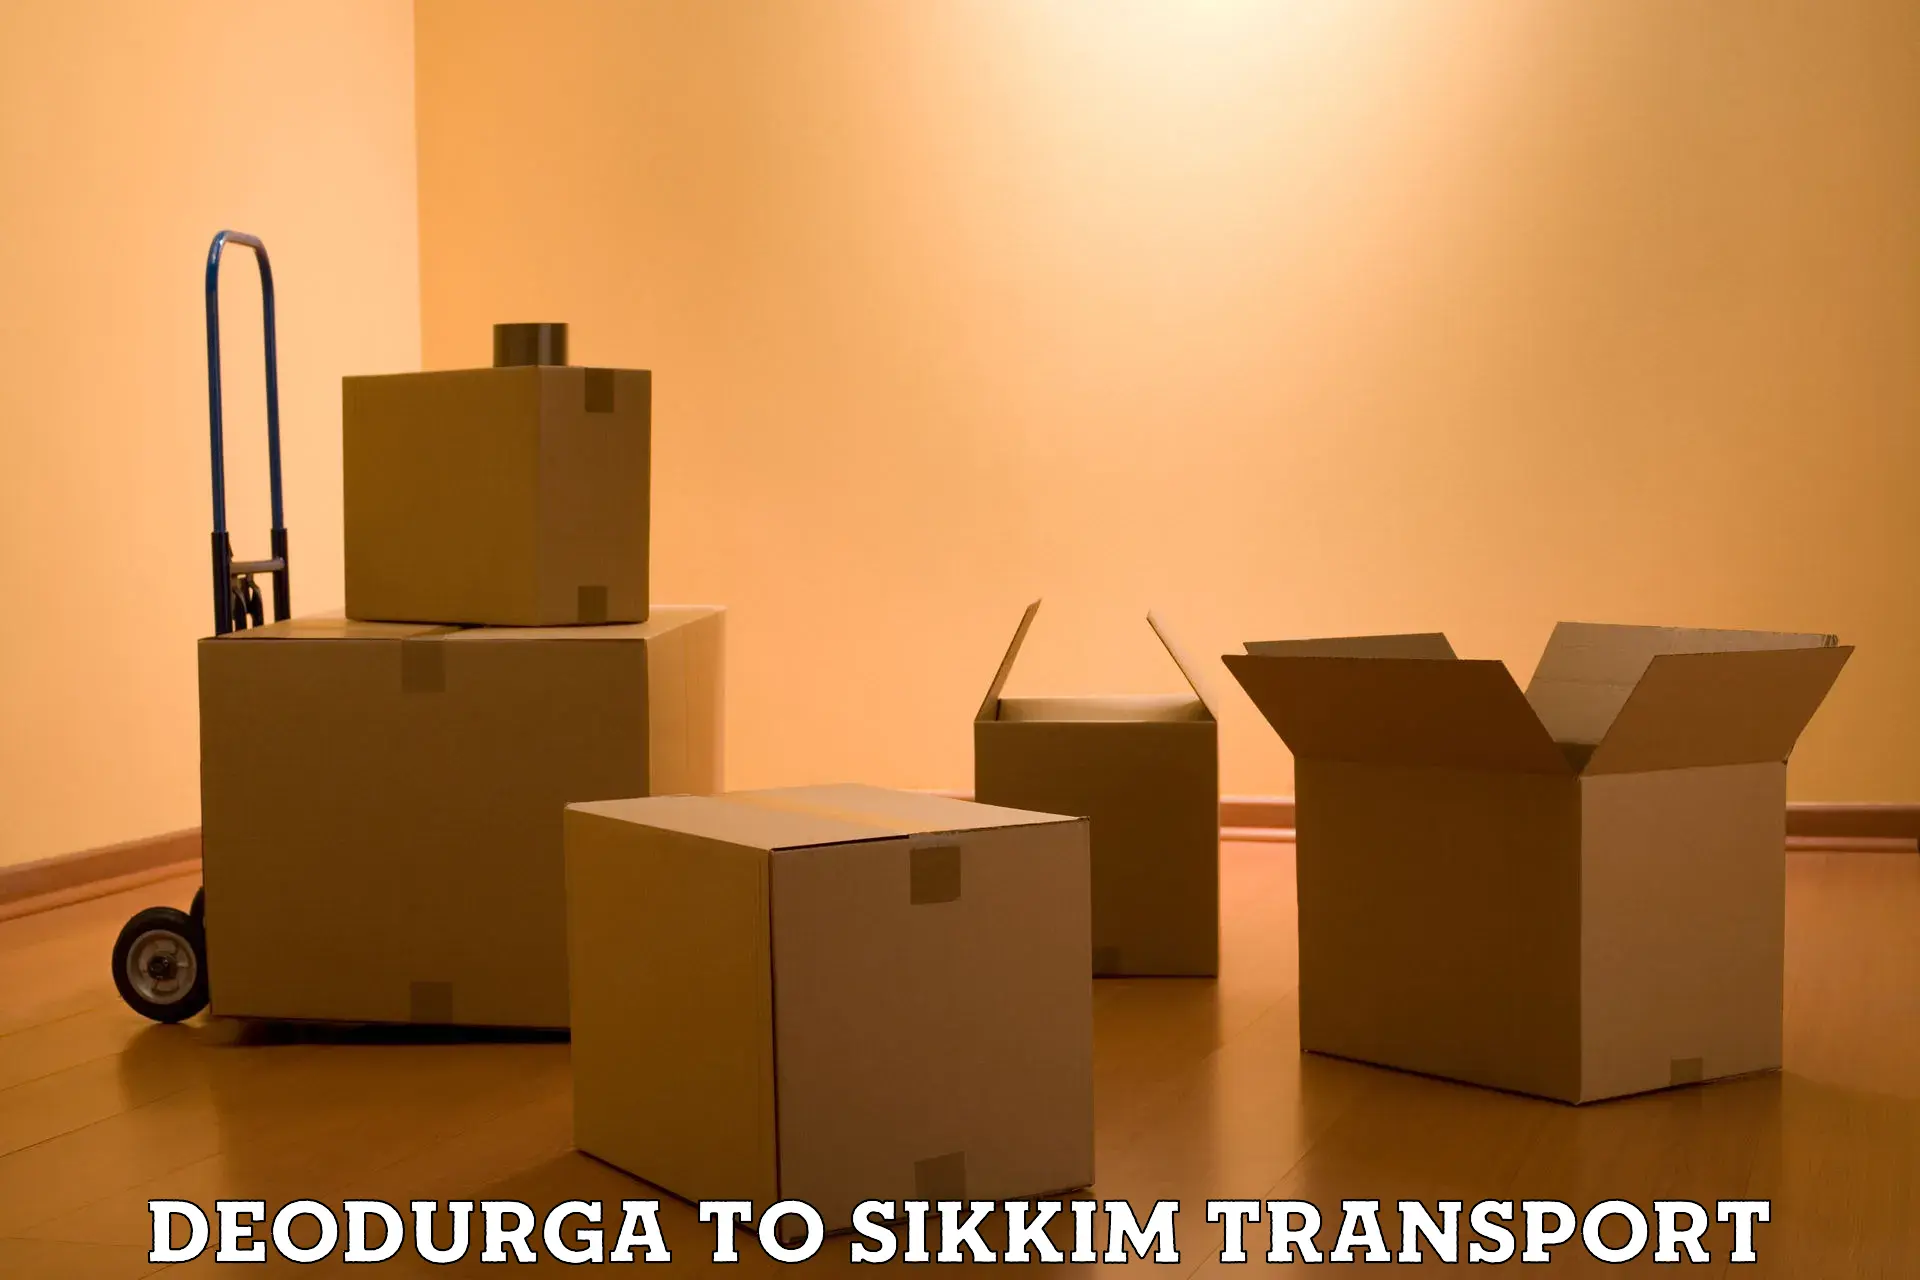 Interstate transport services Deodurga to Mangan